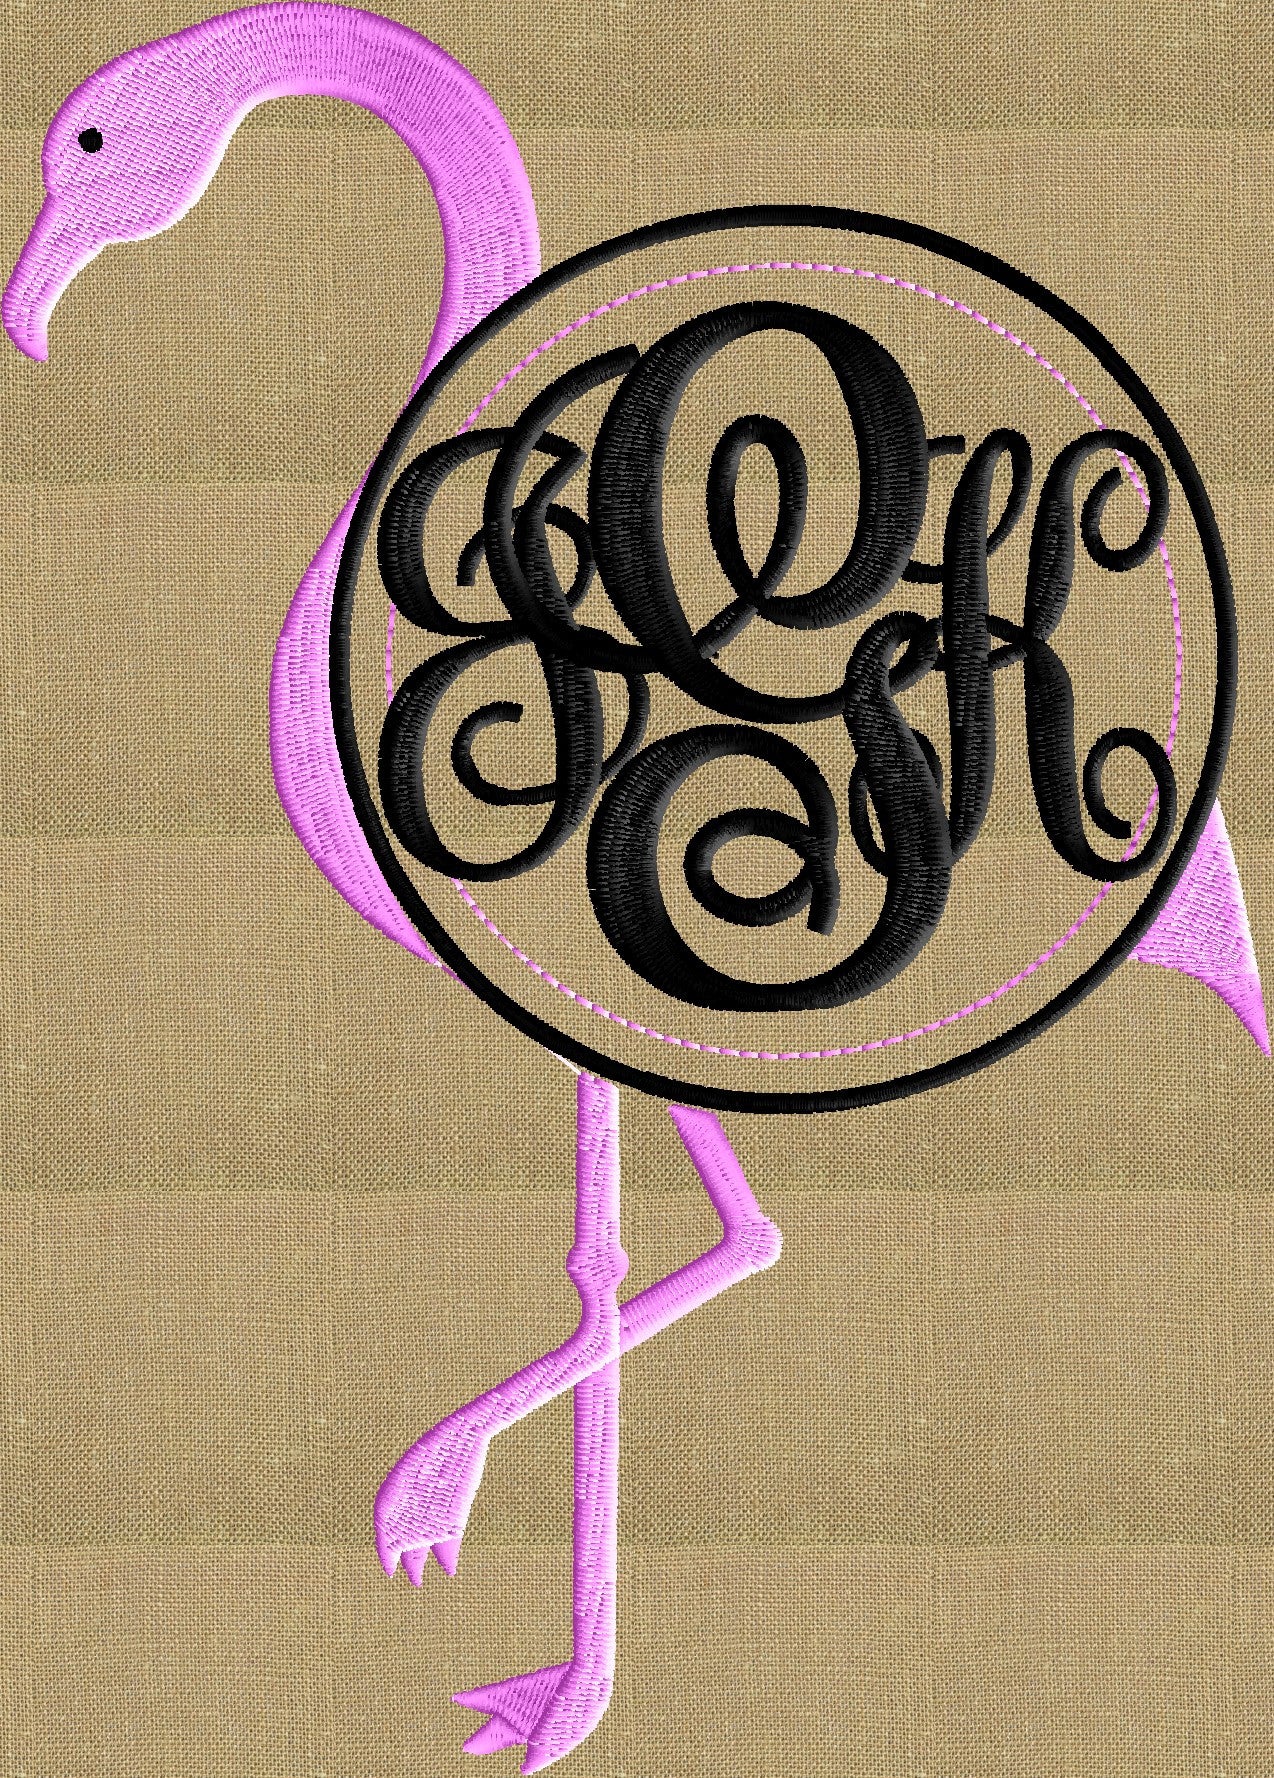 Flamingo Font Frame Monogram Embroidery Design - Font not included - Instant download - Hus Dst Exp Vp3 Jef Pes formats